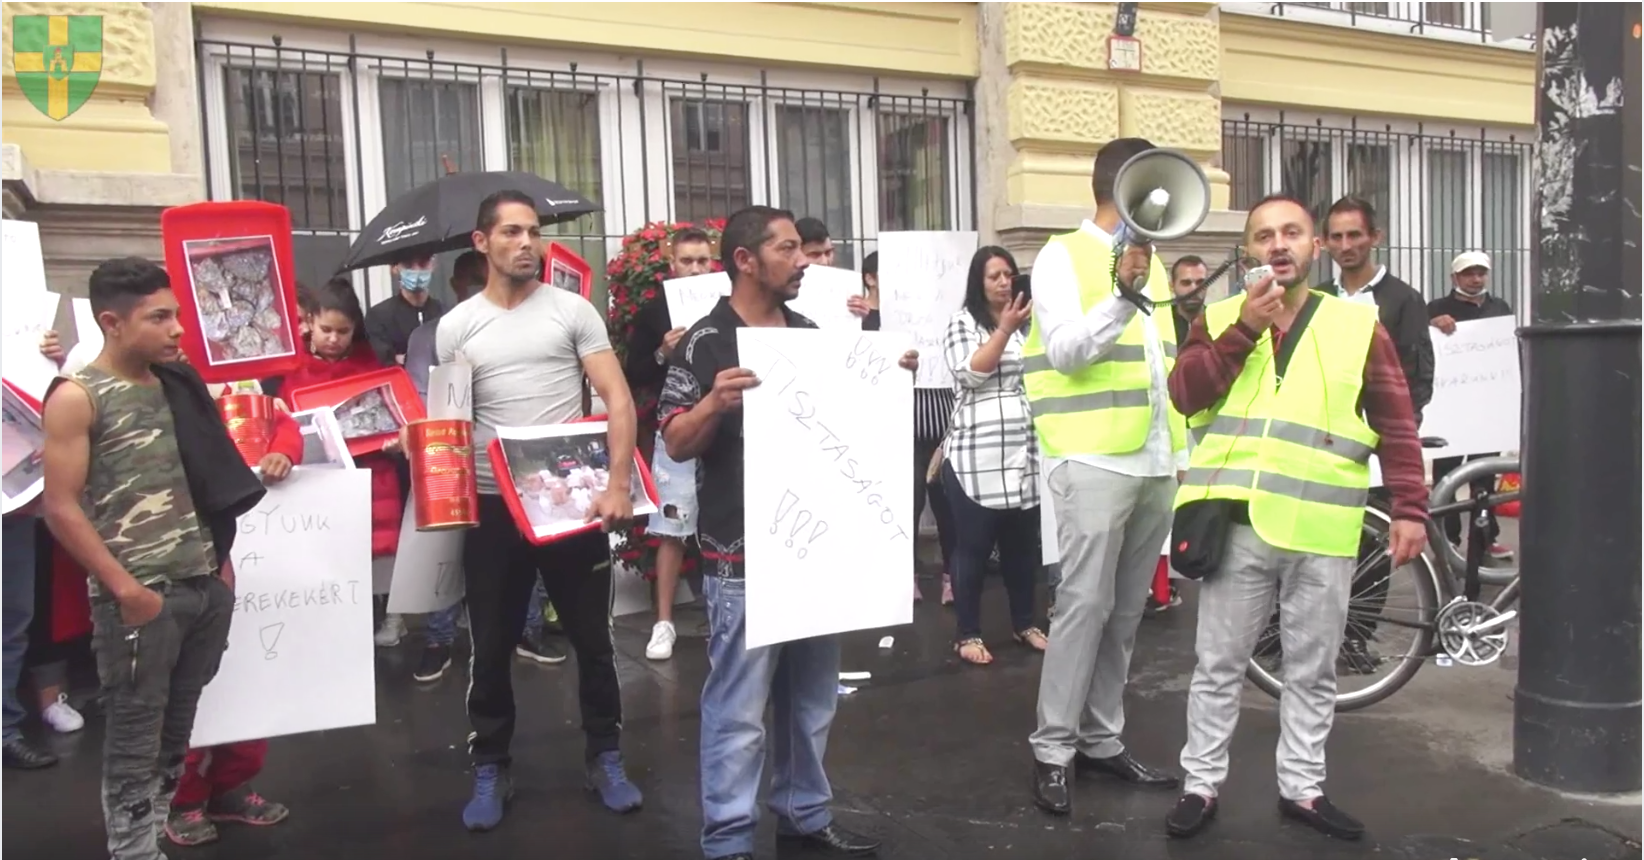 Vidéki tüntetők vonultak fel Pikó András ellen a józsefvárosi állapotok miatt